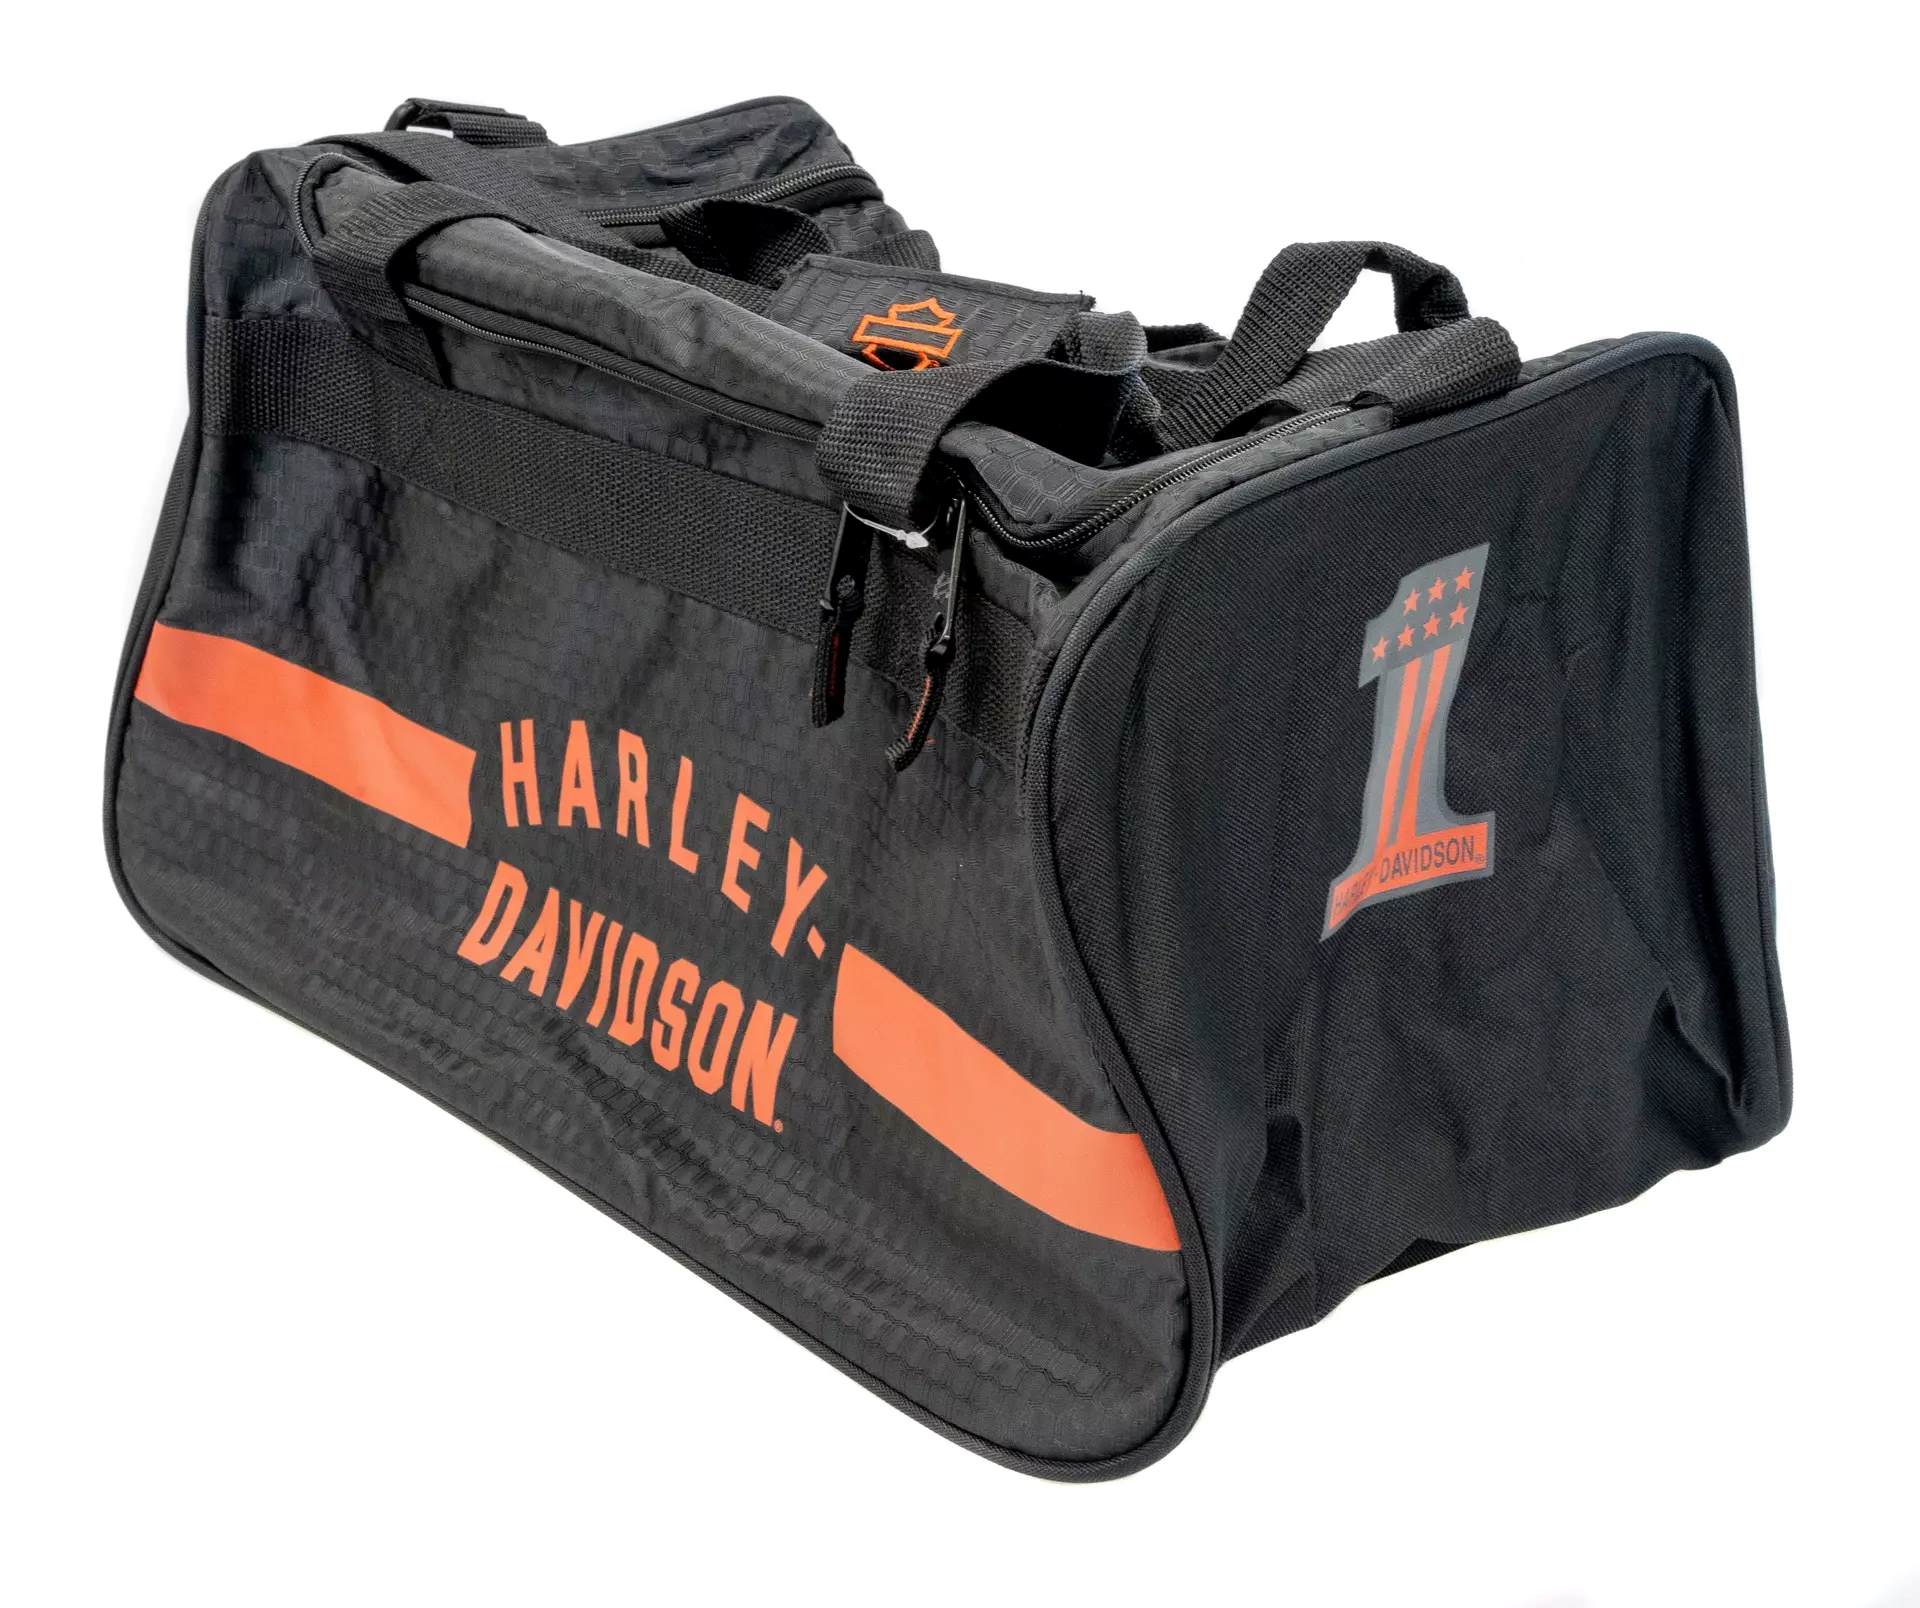 Harley-Davidson Racing Travel Duffel Bag w/ Hideaway Rain Cover